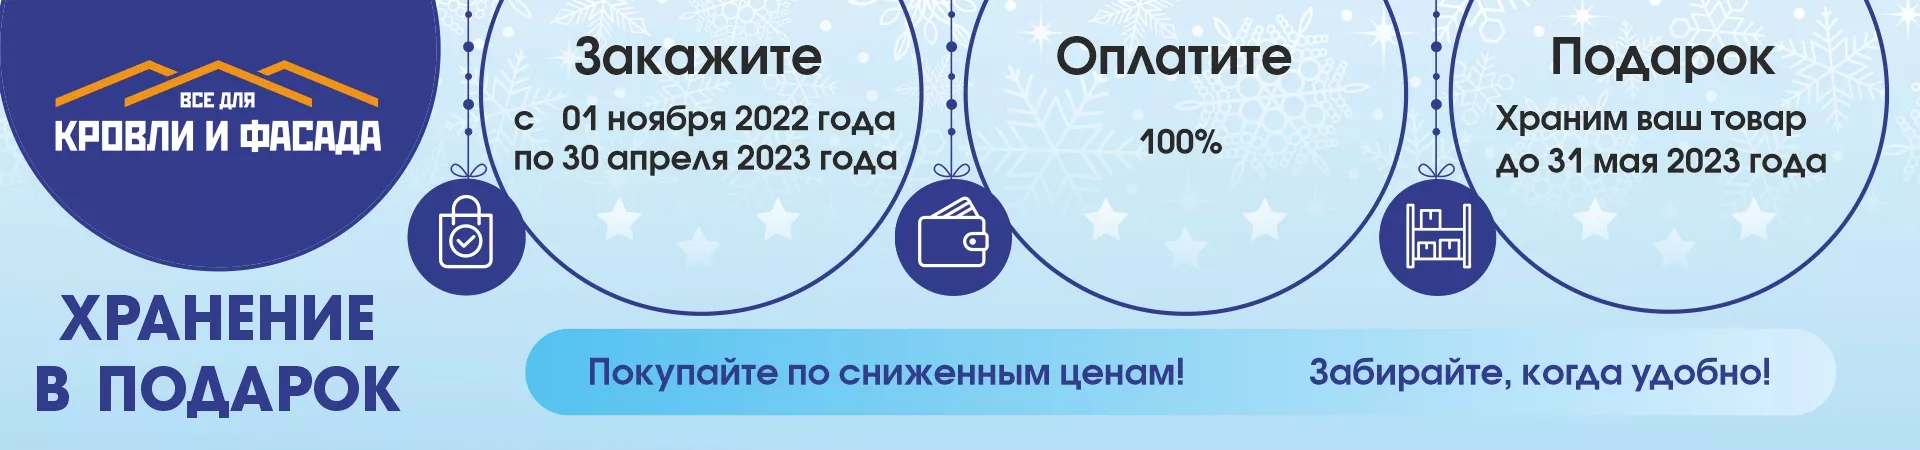 Акция "Зимнее хранение" 2022-2023 в Перми